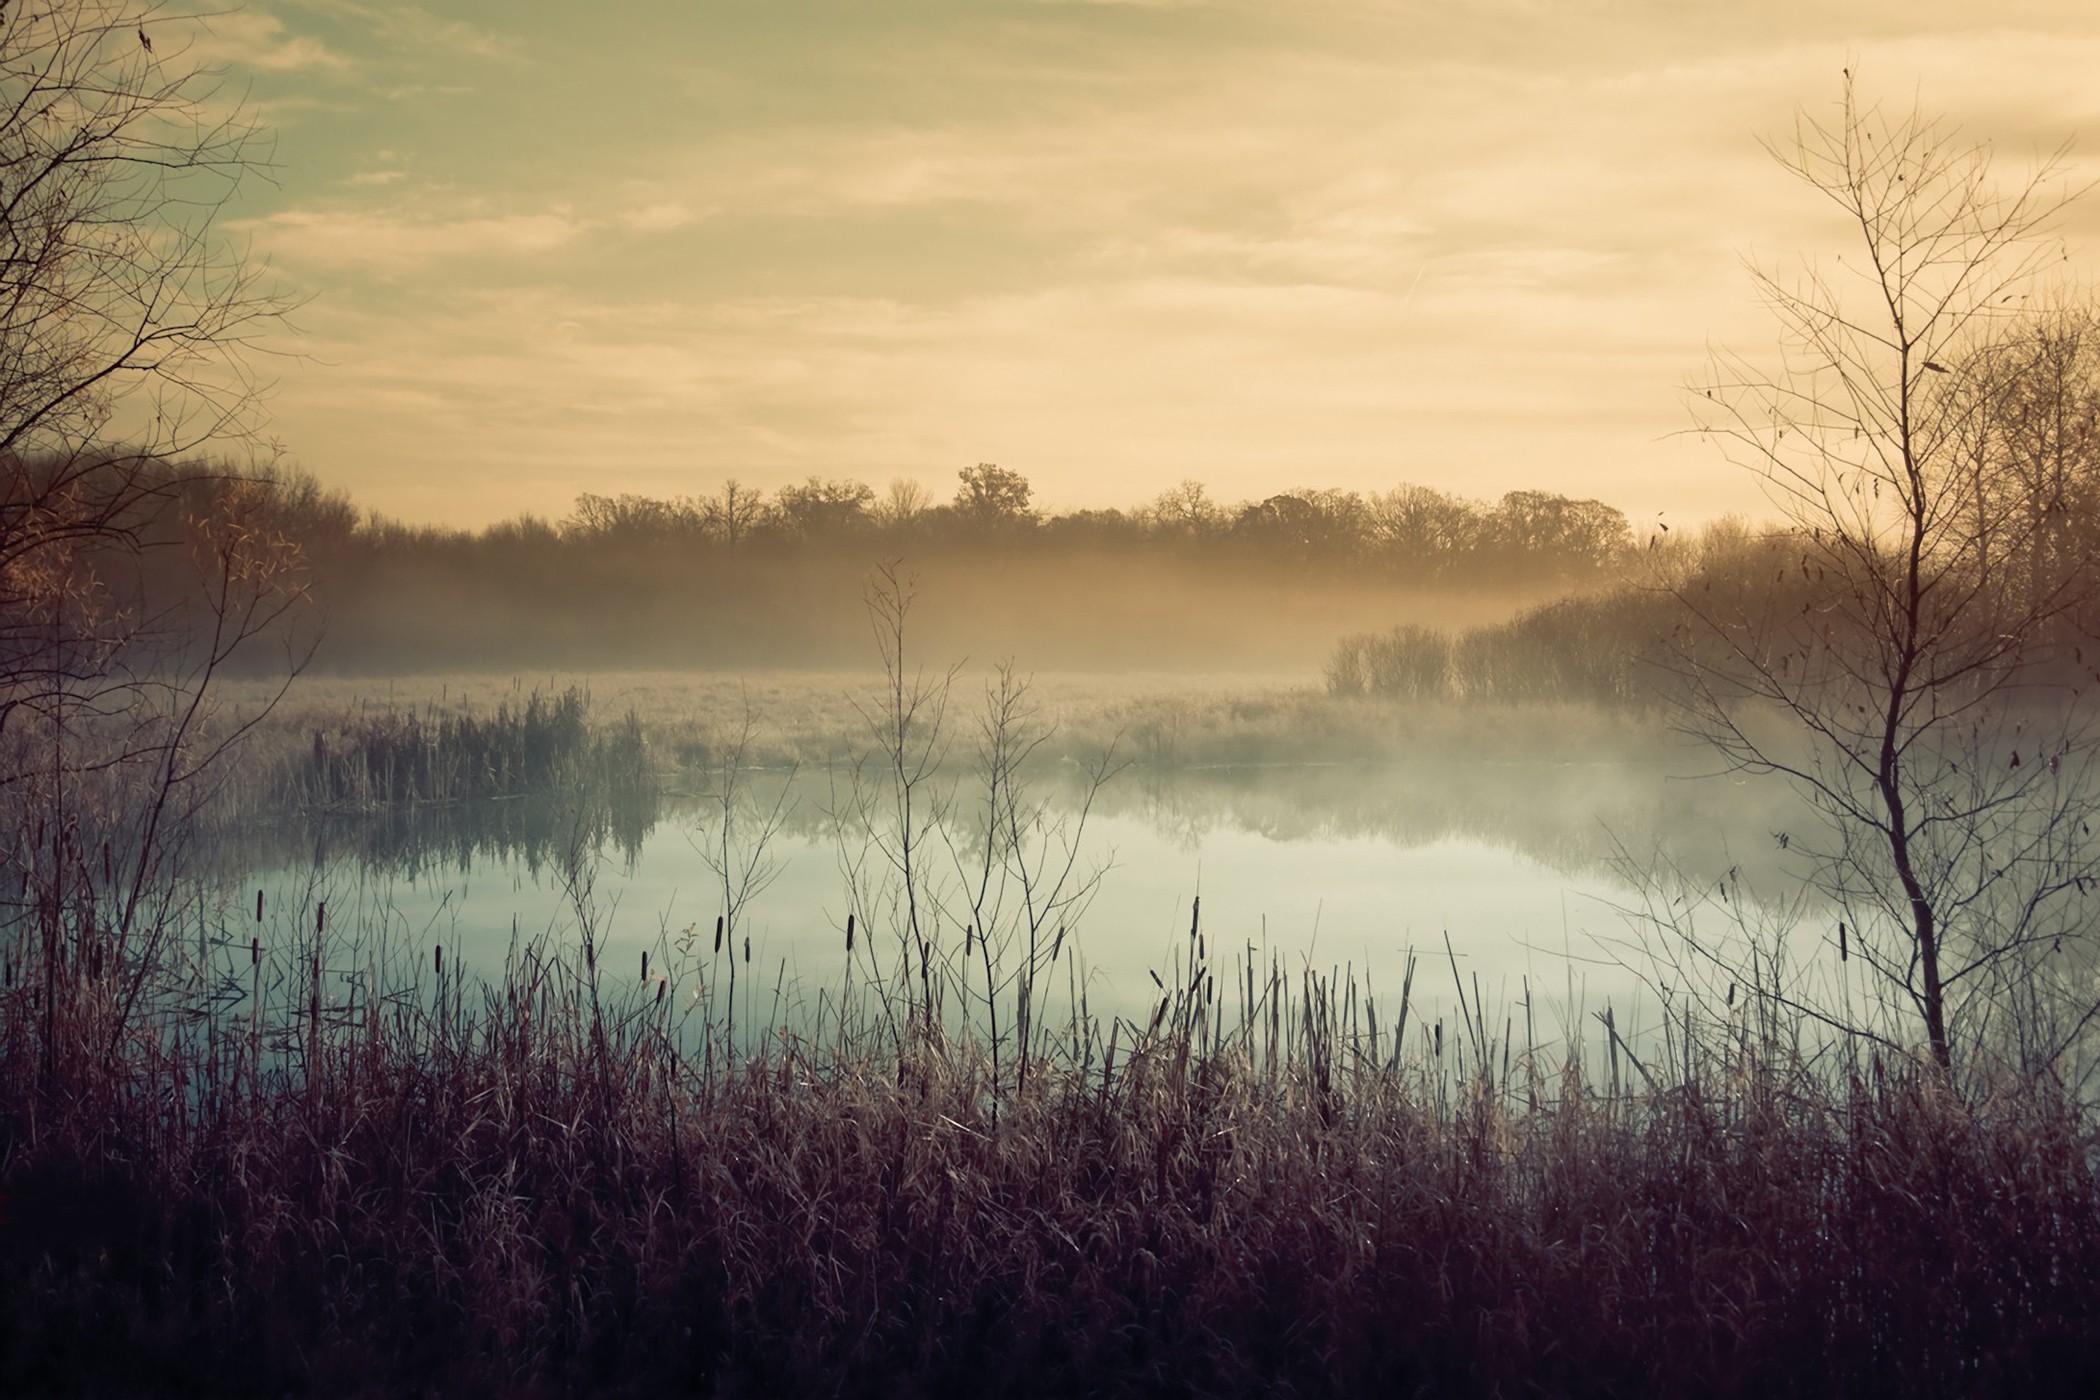 clouds, landscapes, nature, trees, fog, mist, morning, reeds - desktop wallpaper